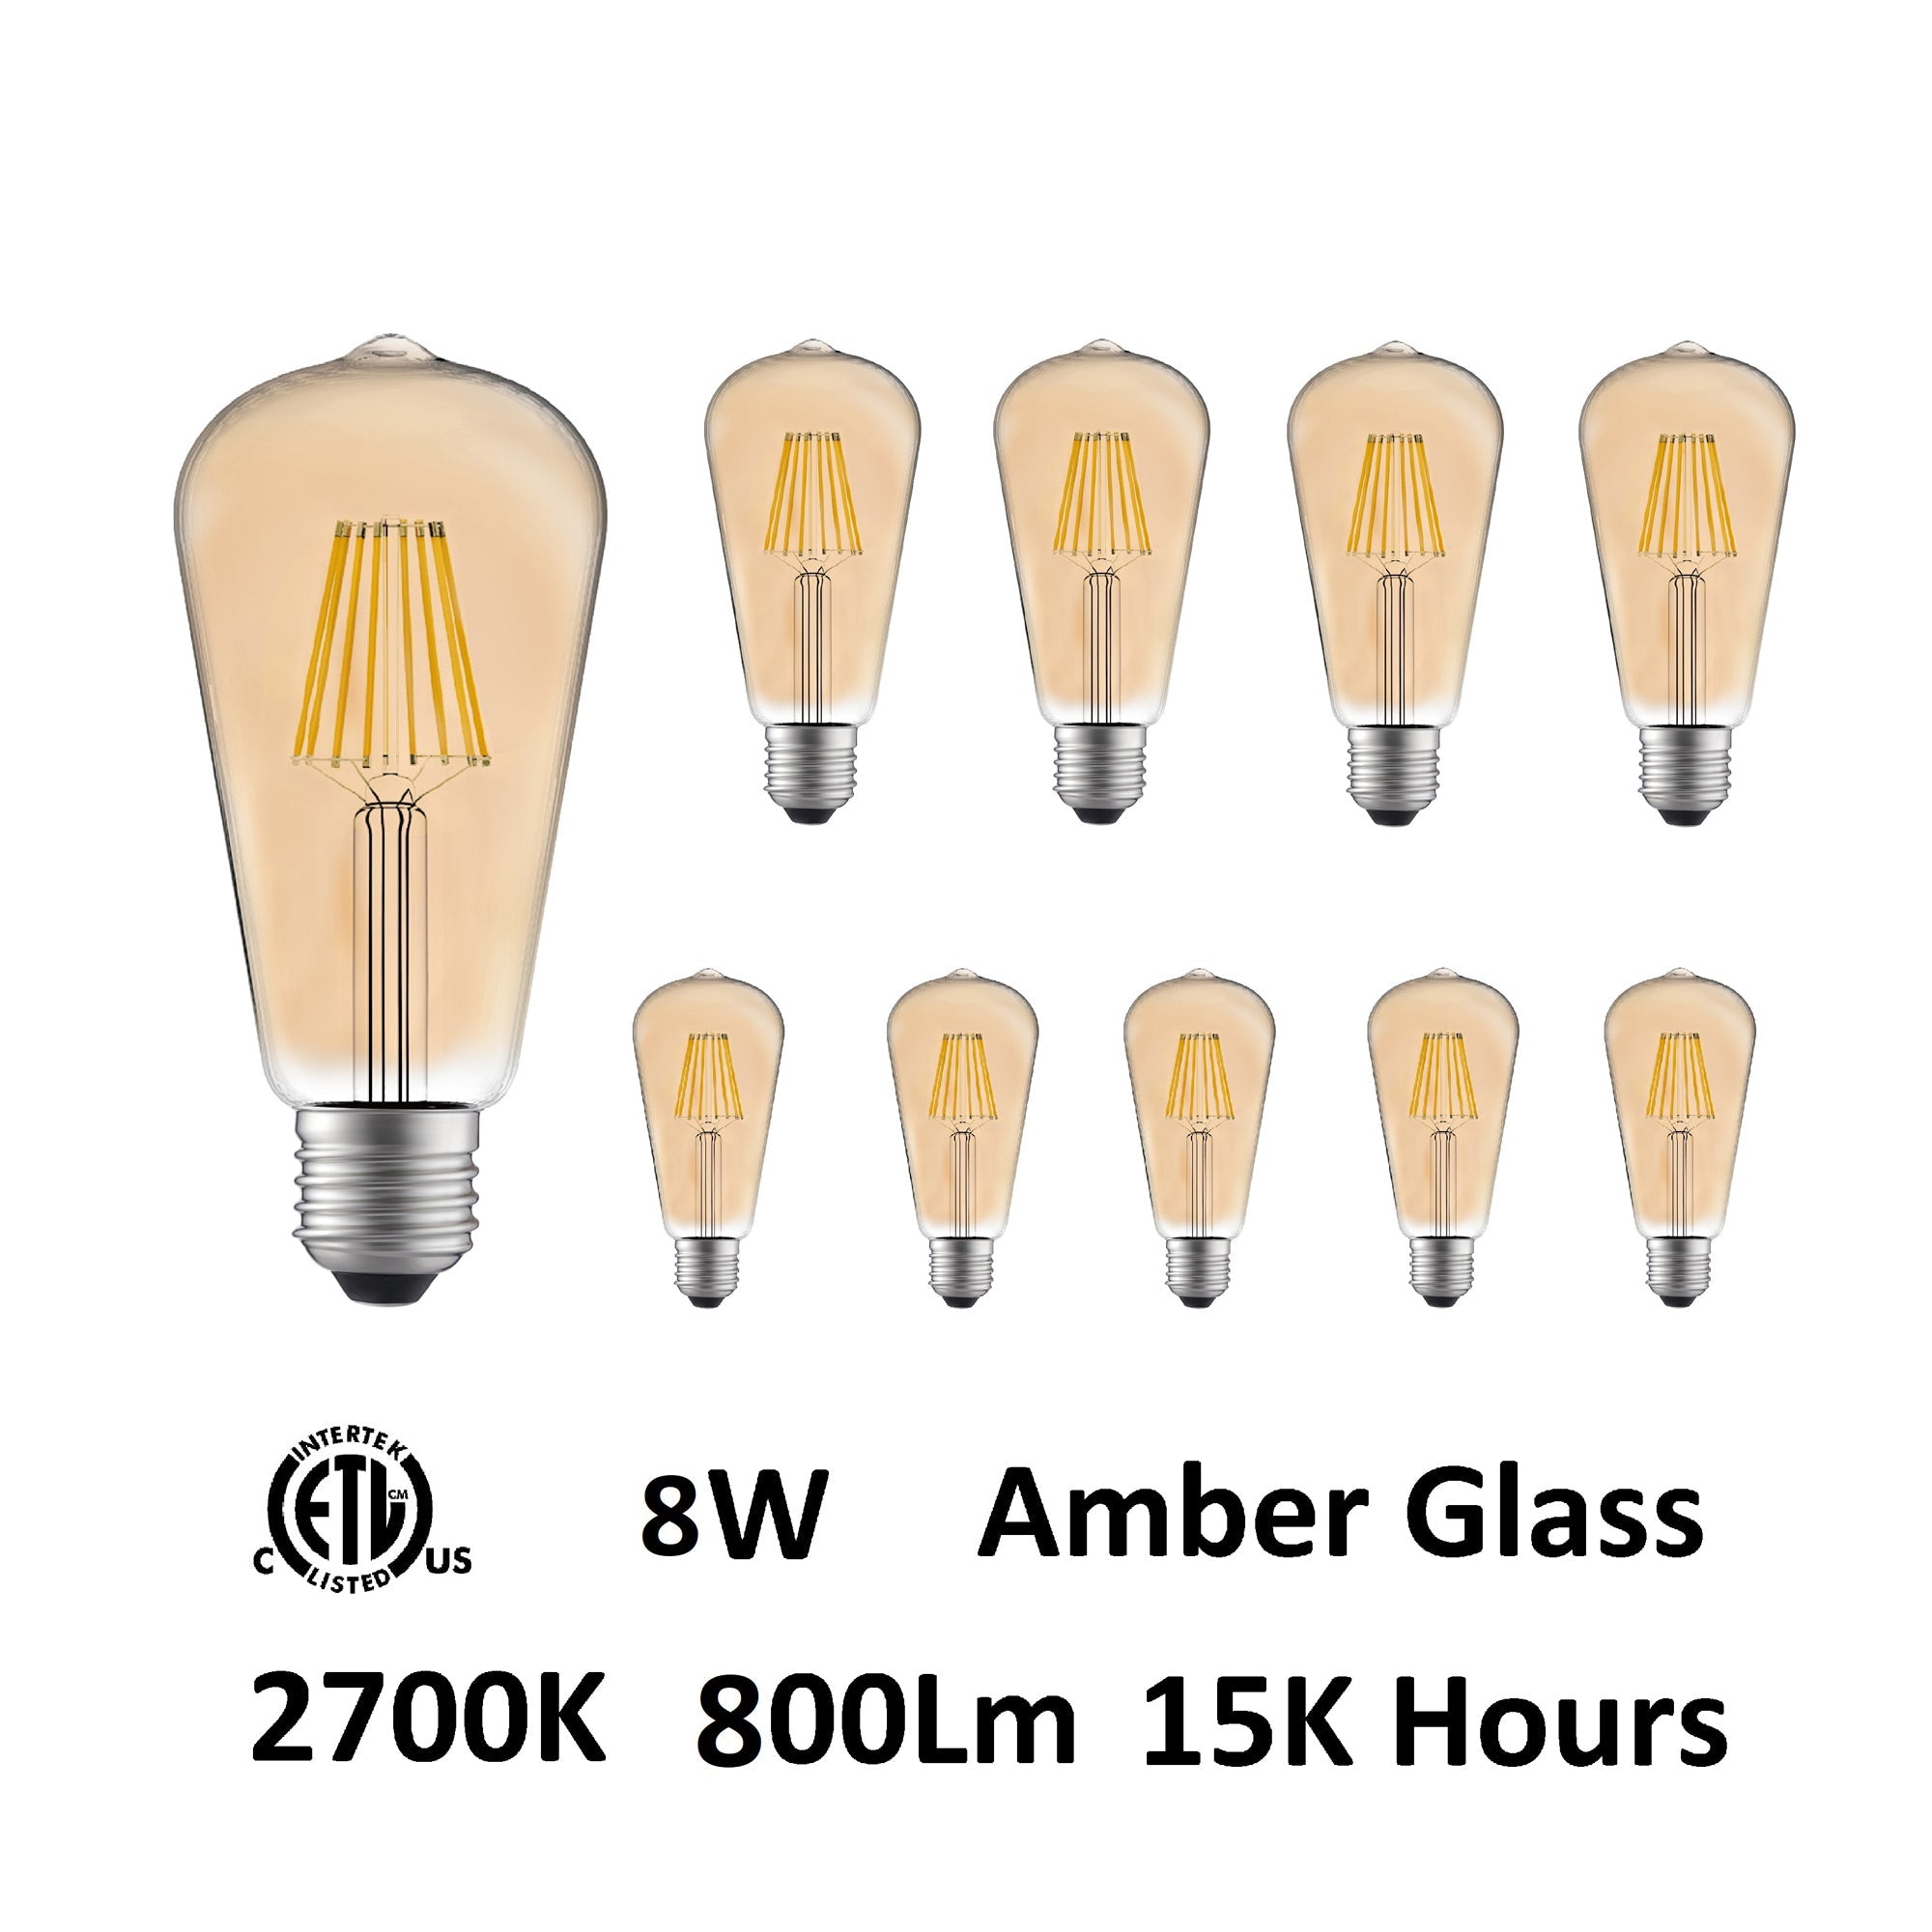 ST19 Warm 2700K LED 8W Light Bulb